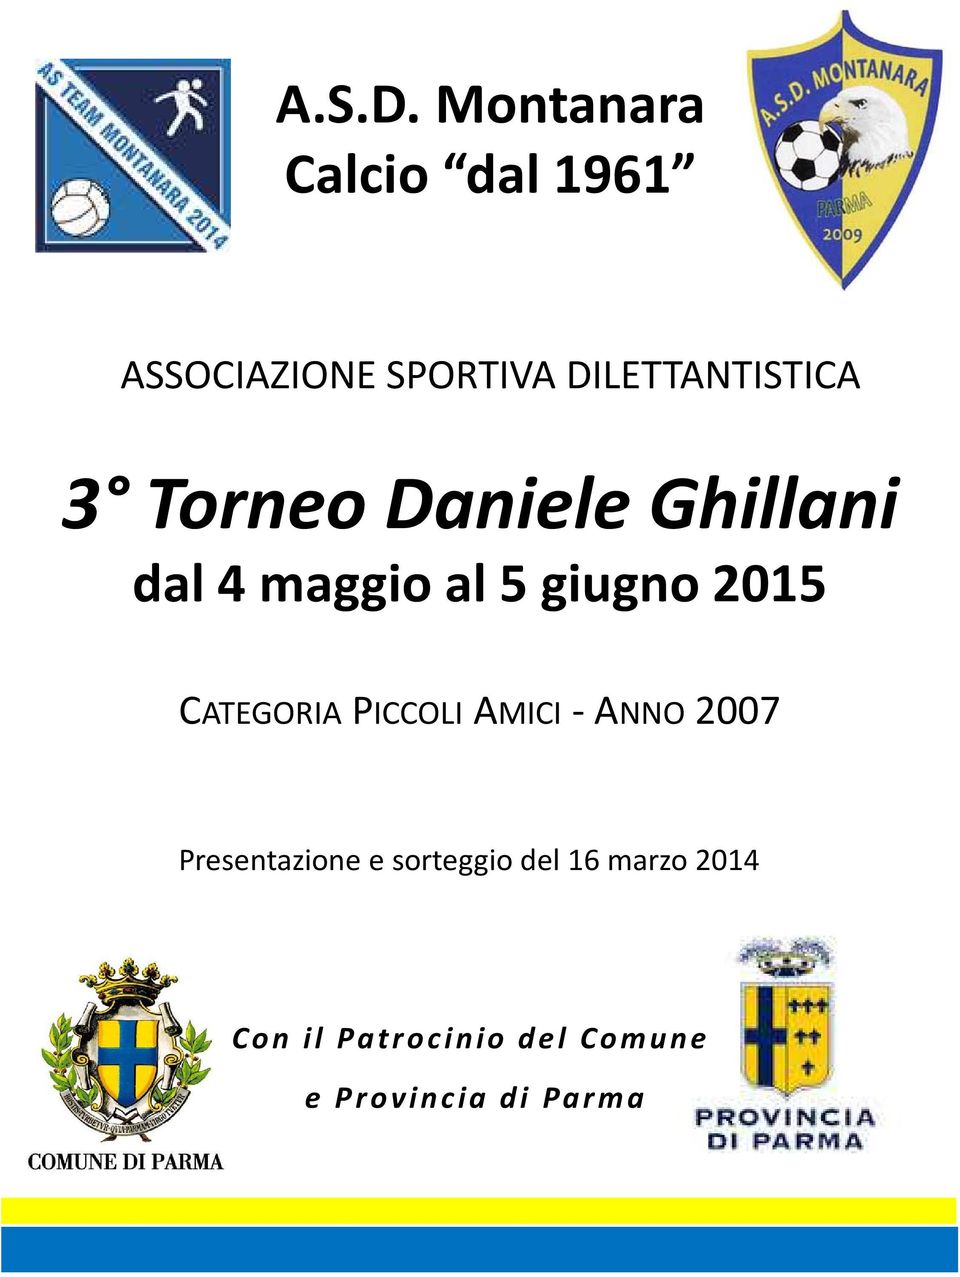 DILETTANTISTICA 3 Torneo Daniele Ghillani dal 4 al 5 giugno